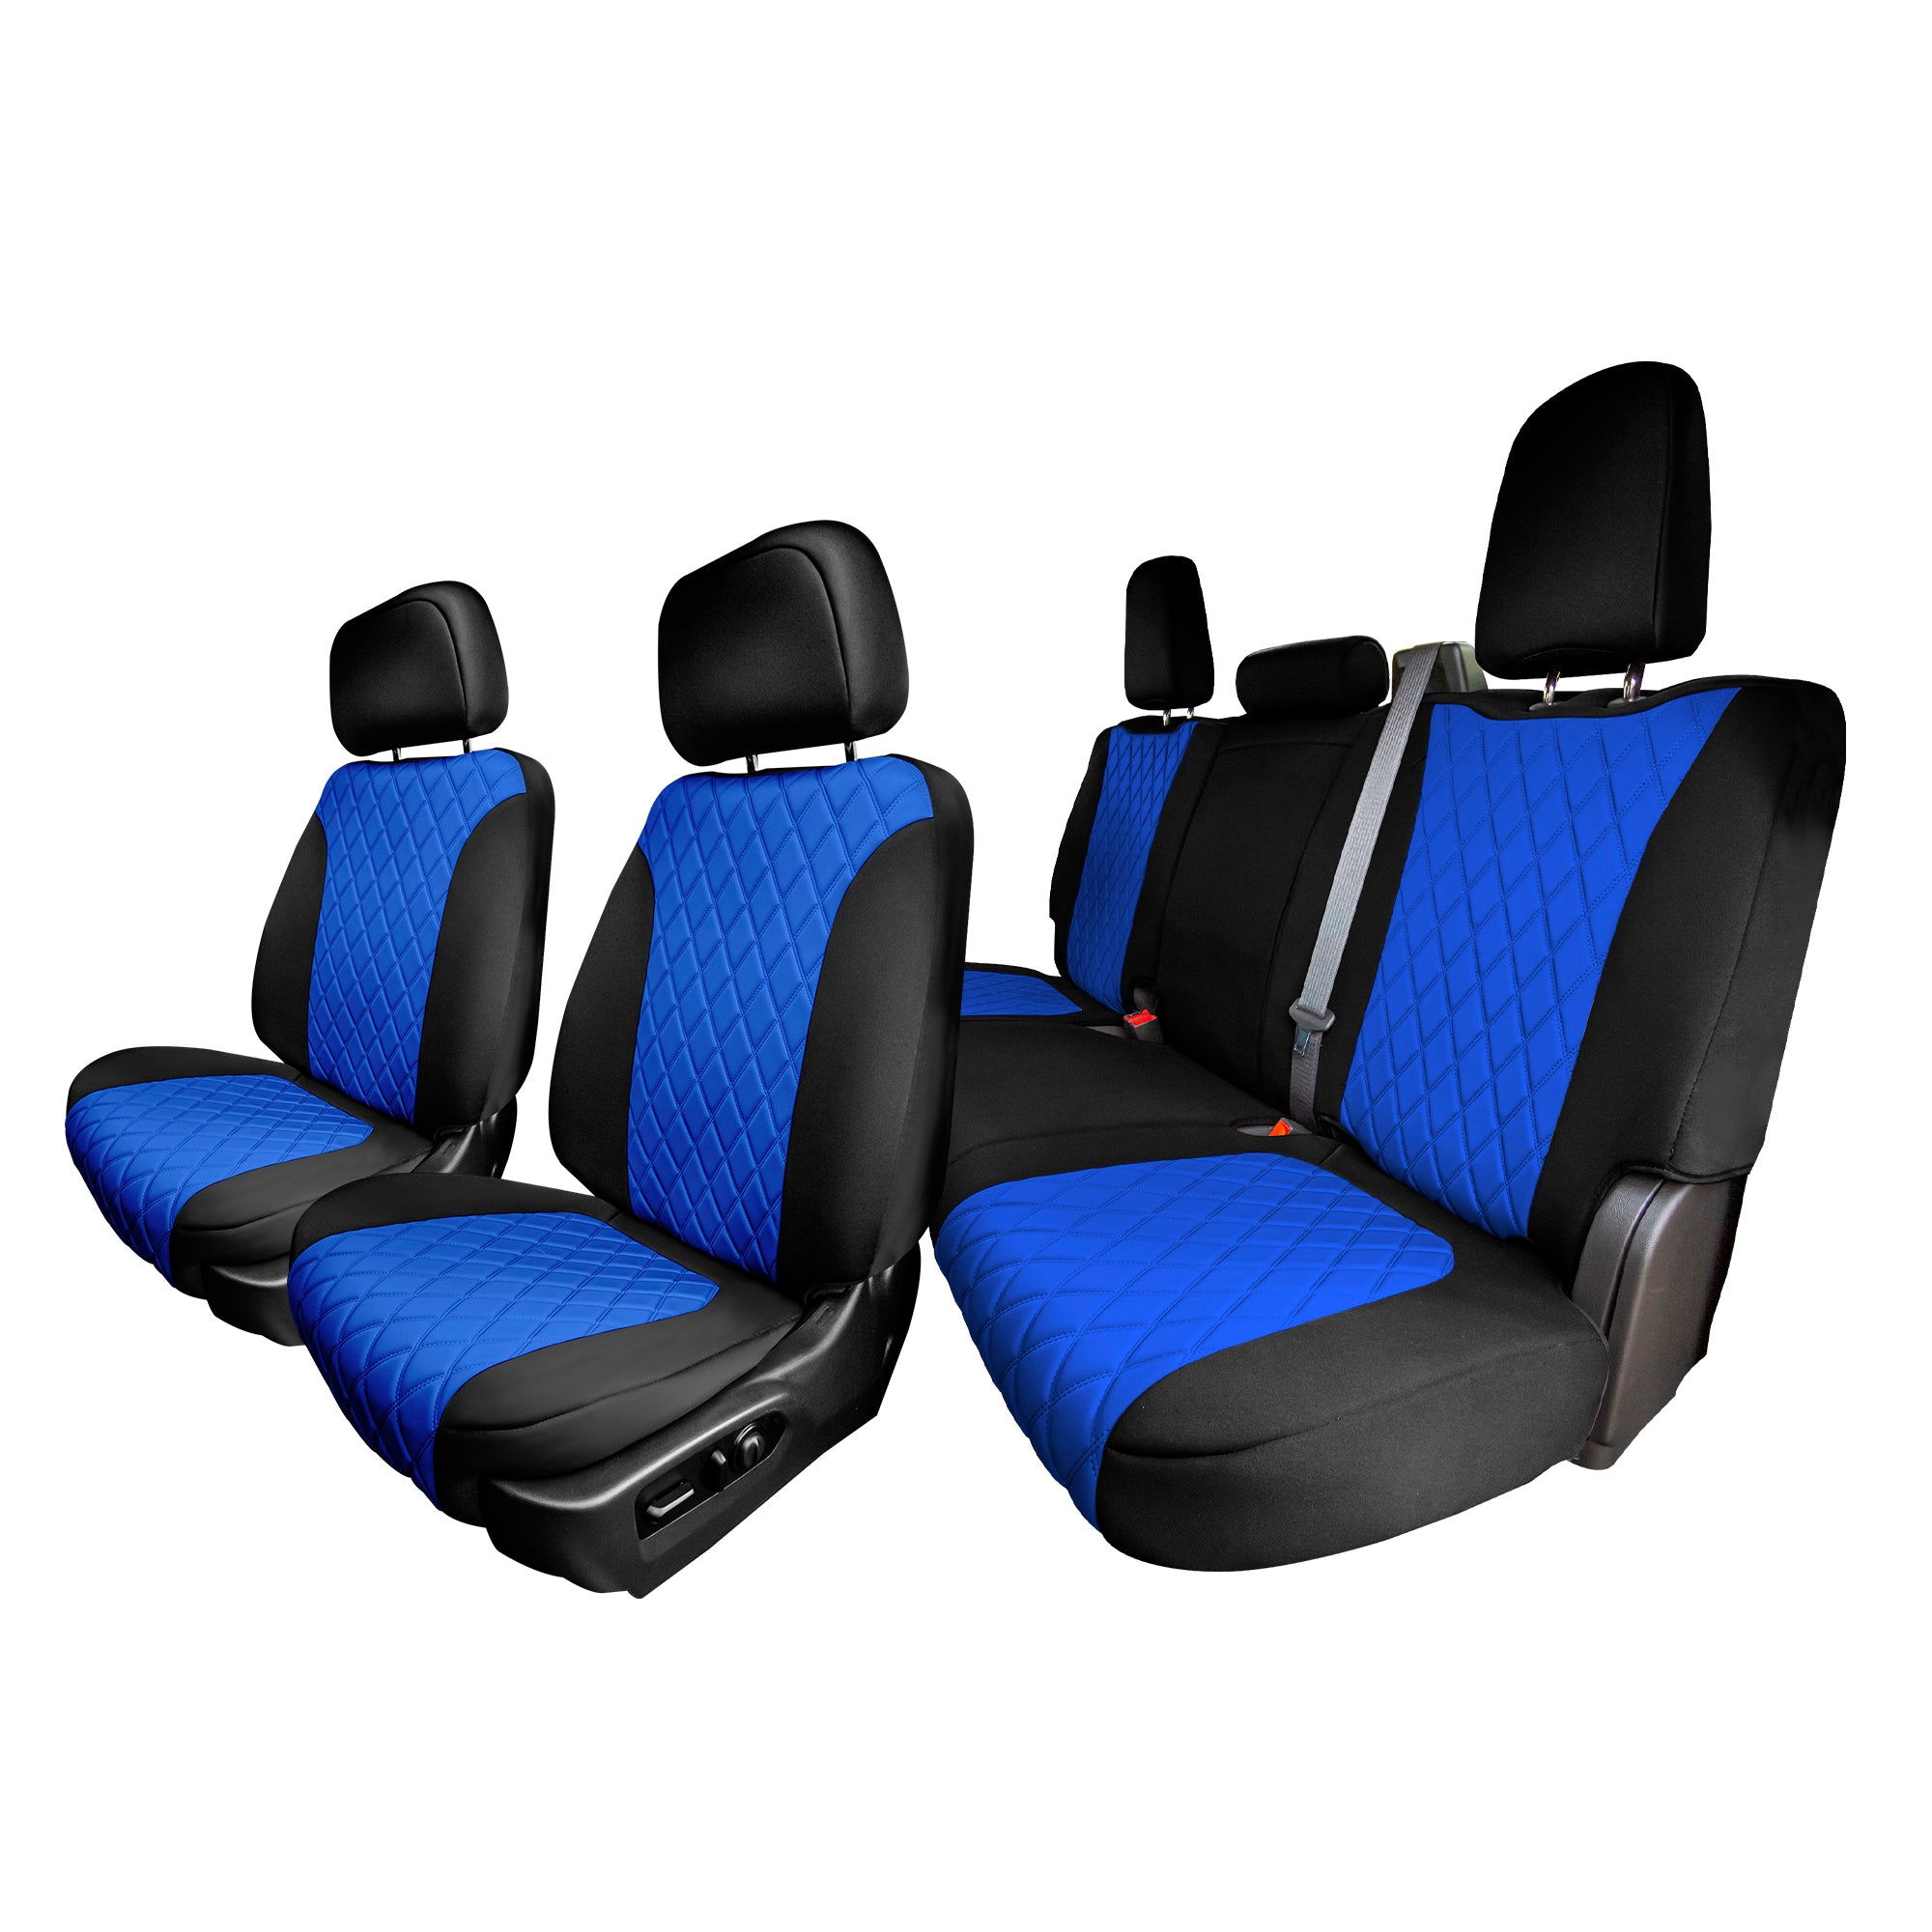 Chevrolet Silverado 1500 2500HD 3500HD WT LT - 2019 - 2023 - Full Set Seat Covers - Blue Ultraflex Neoprene